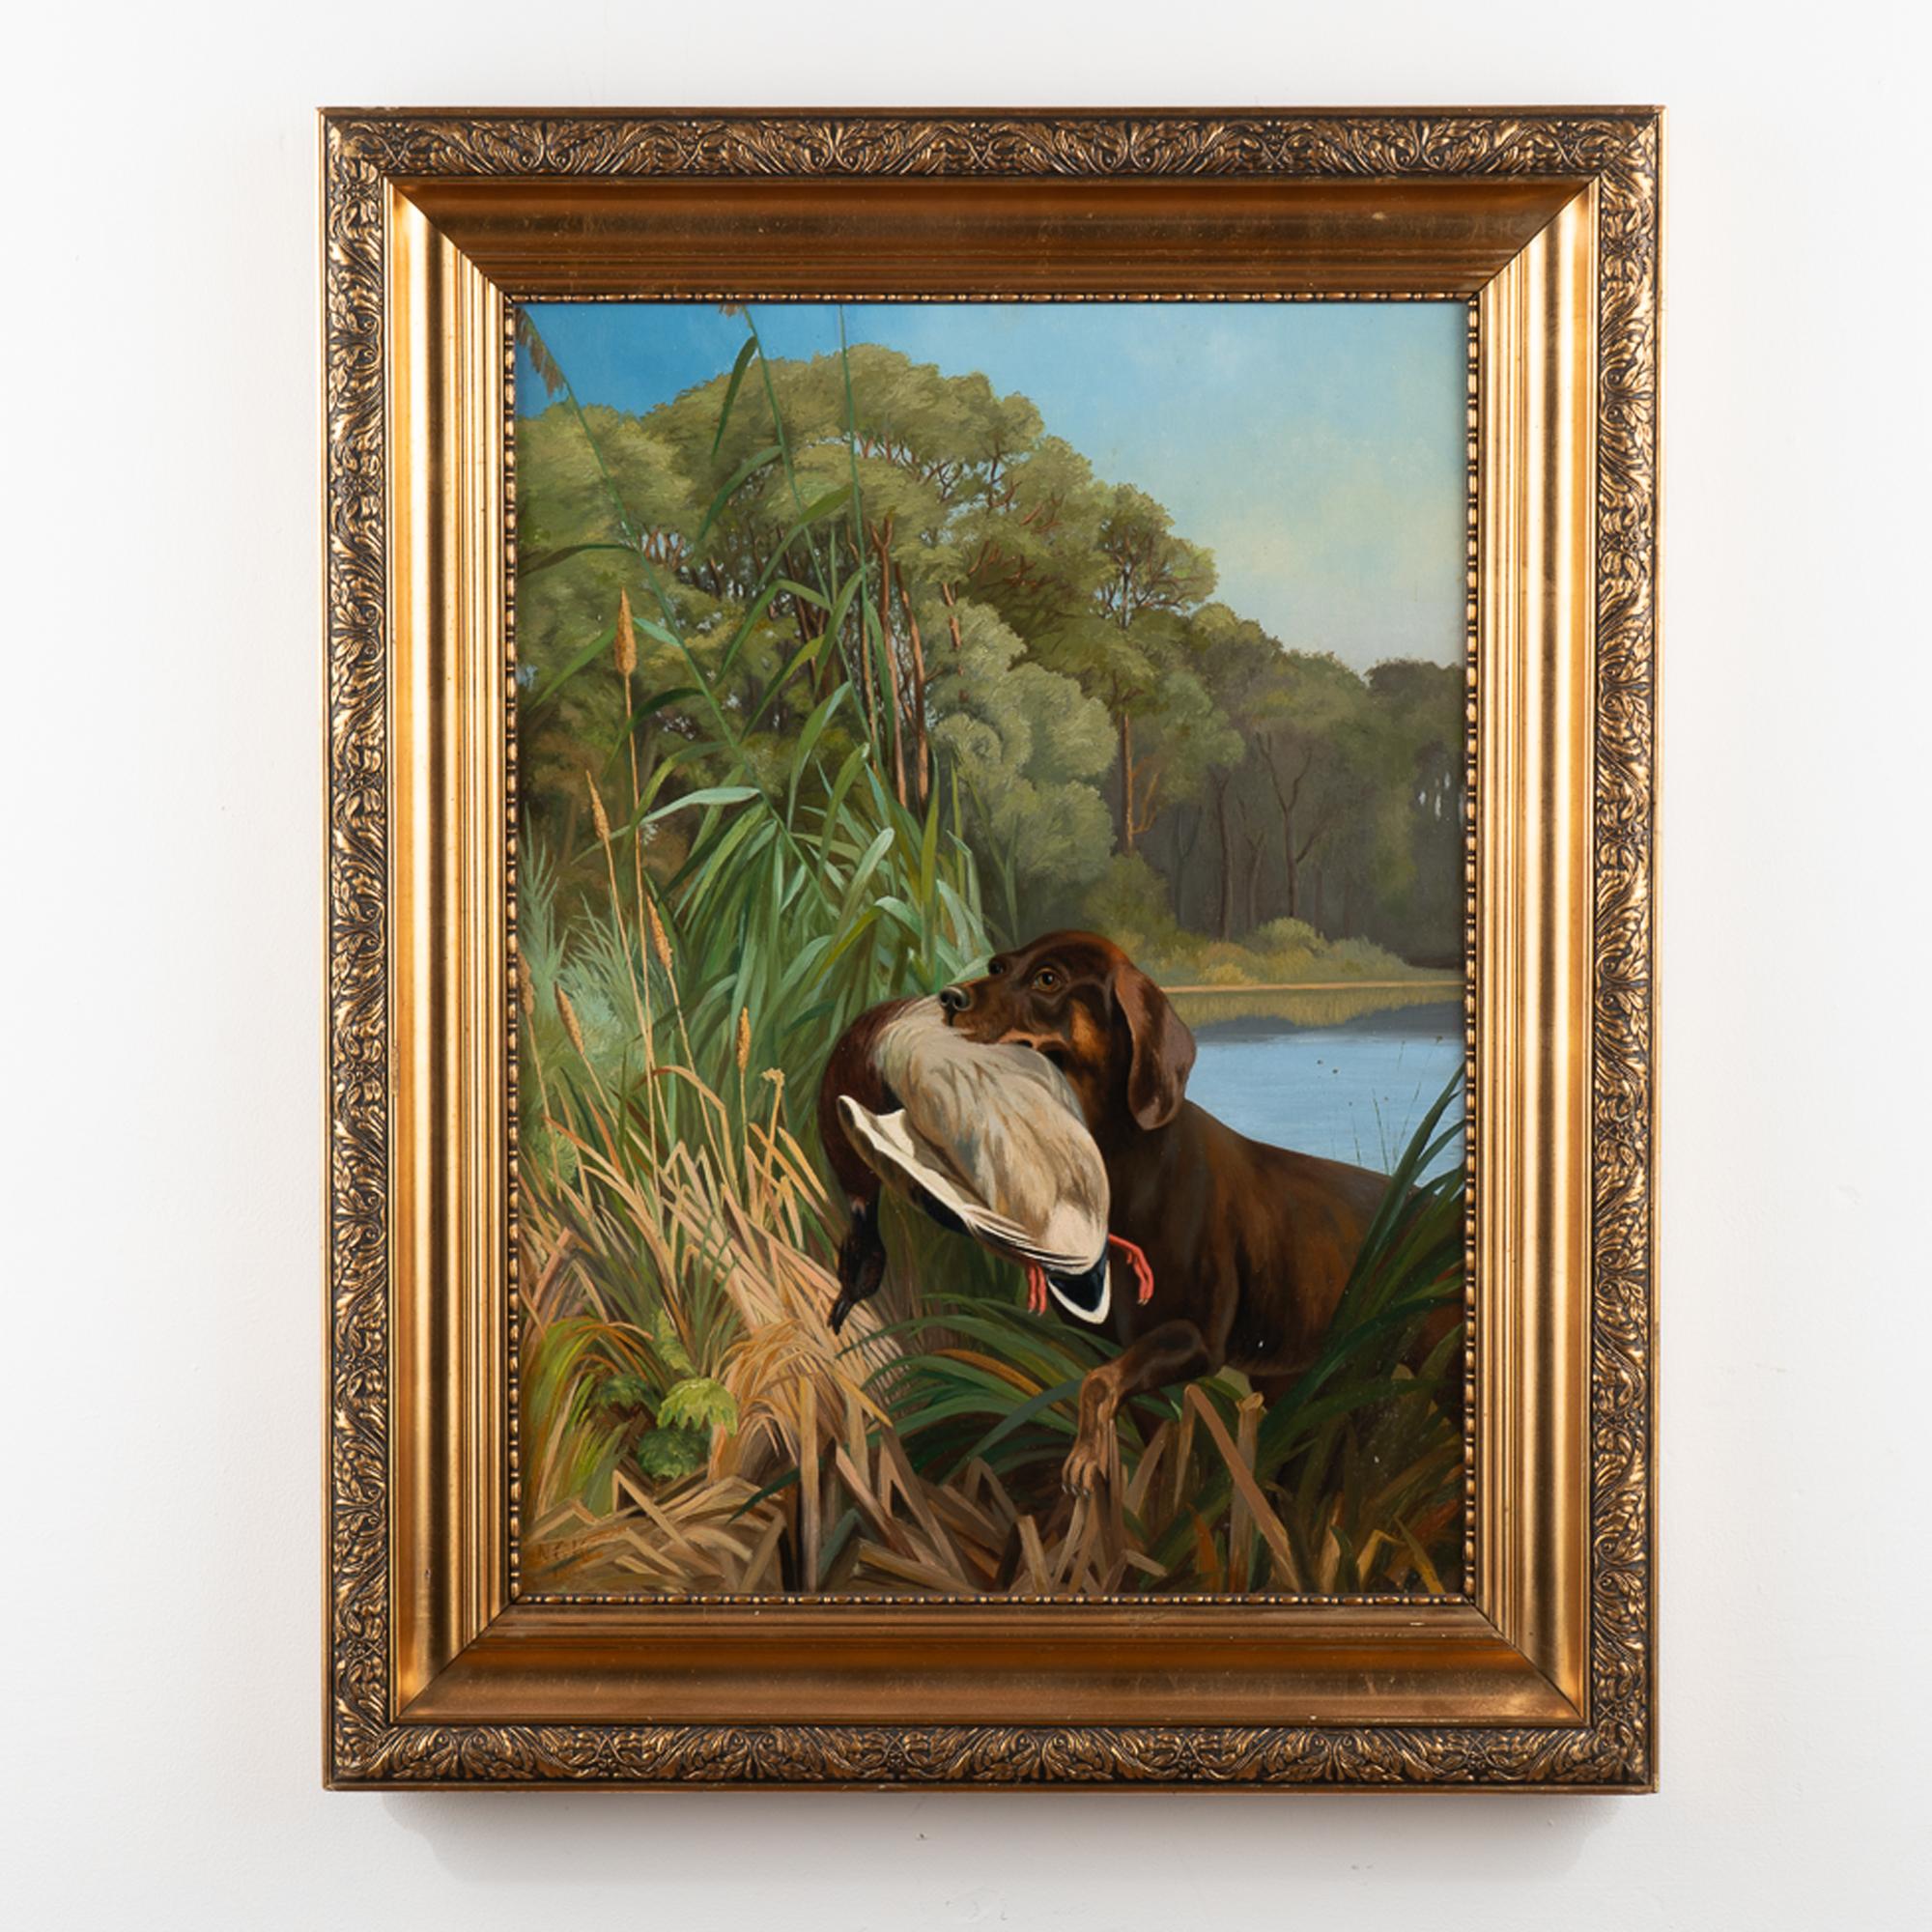 Peinture originale à l'huile sur toile représentant une scène de chasse avec un retriever sortant de l'eau et ramenant un canard sur le rivage. 
Les couleurs vertes, bleues, brunes et blanches restent vives sur ce tableau daté de 1899 par un artiste